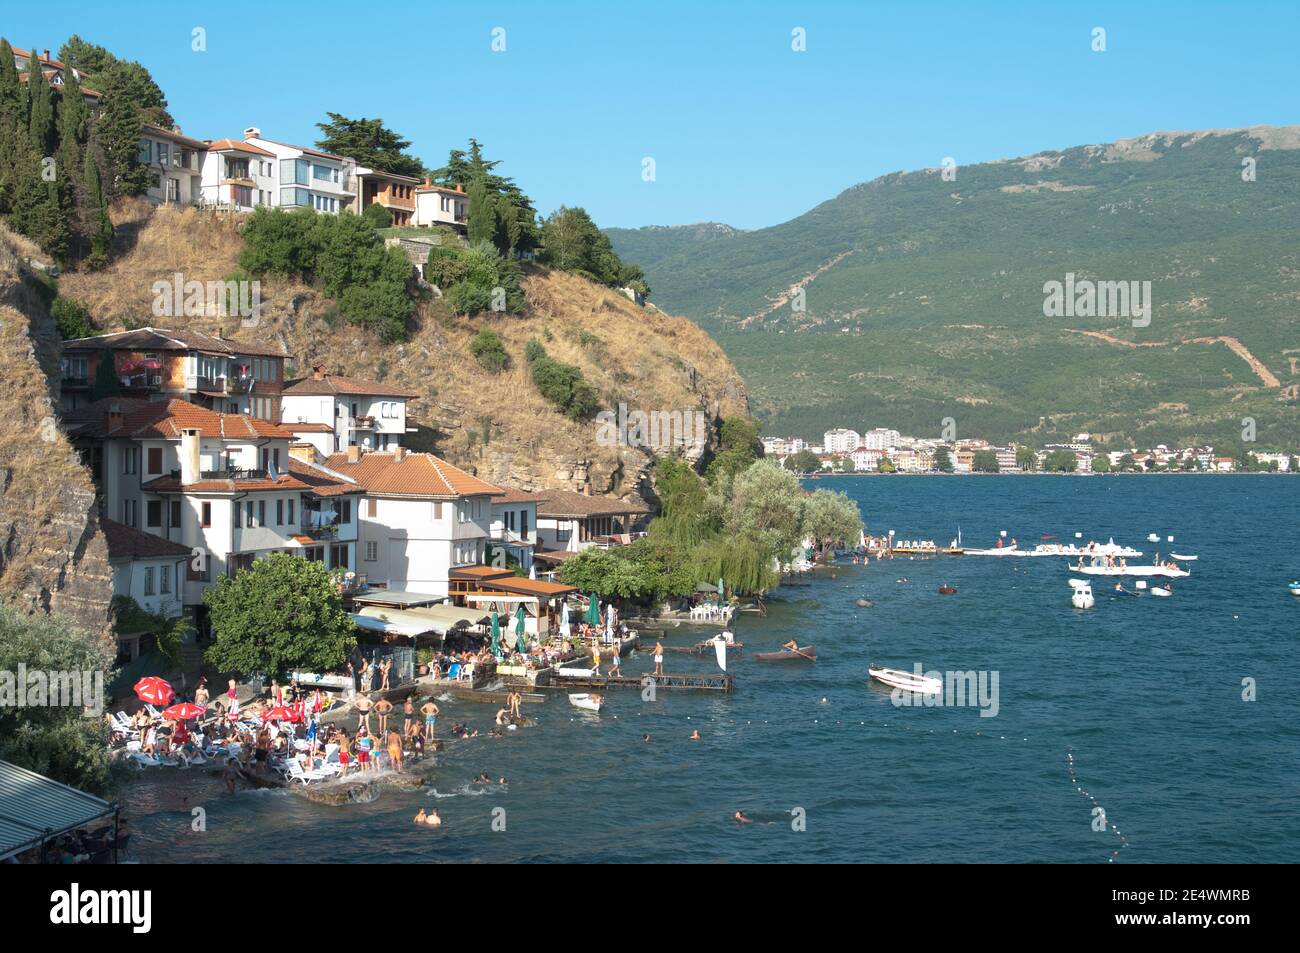 Old Ohrid, Repubblica di Macedonia - 16 luglio 2011: Kaneo spiaggia nella Vecchia Ohrid affollata di bagnanti sulle spiagge del suo lago Foto Stock